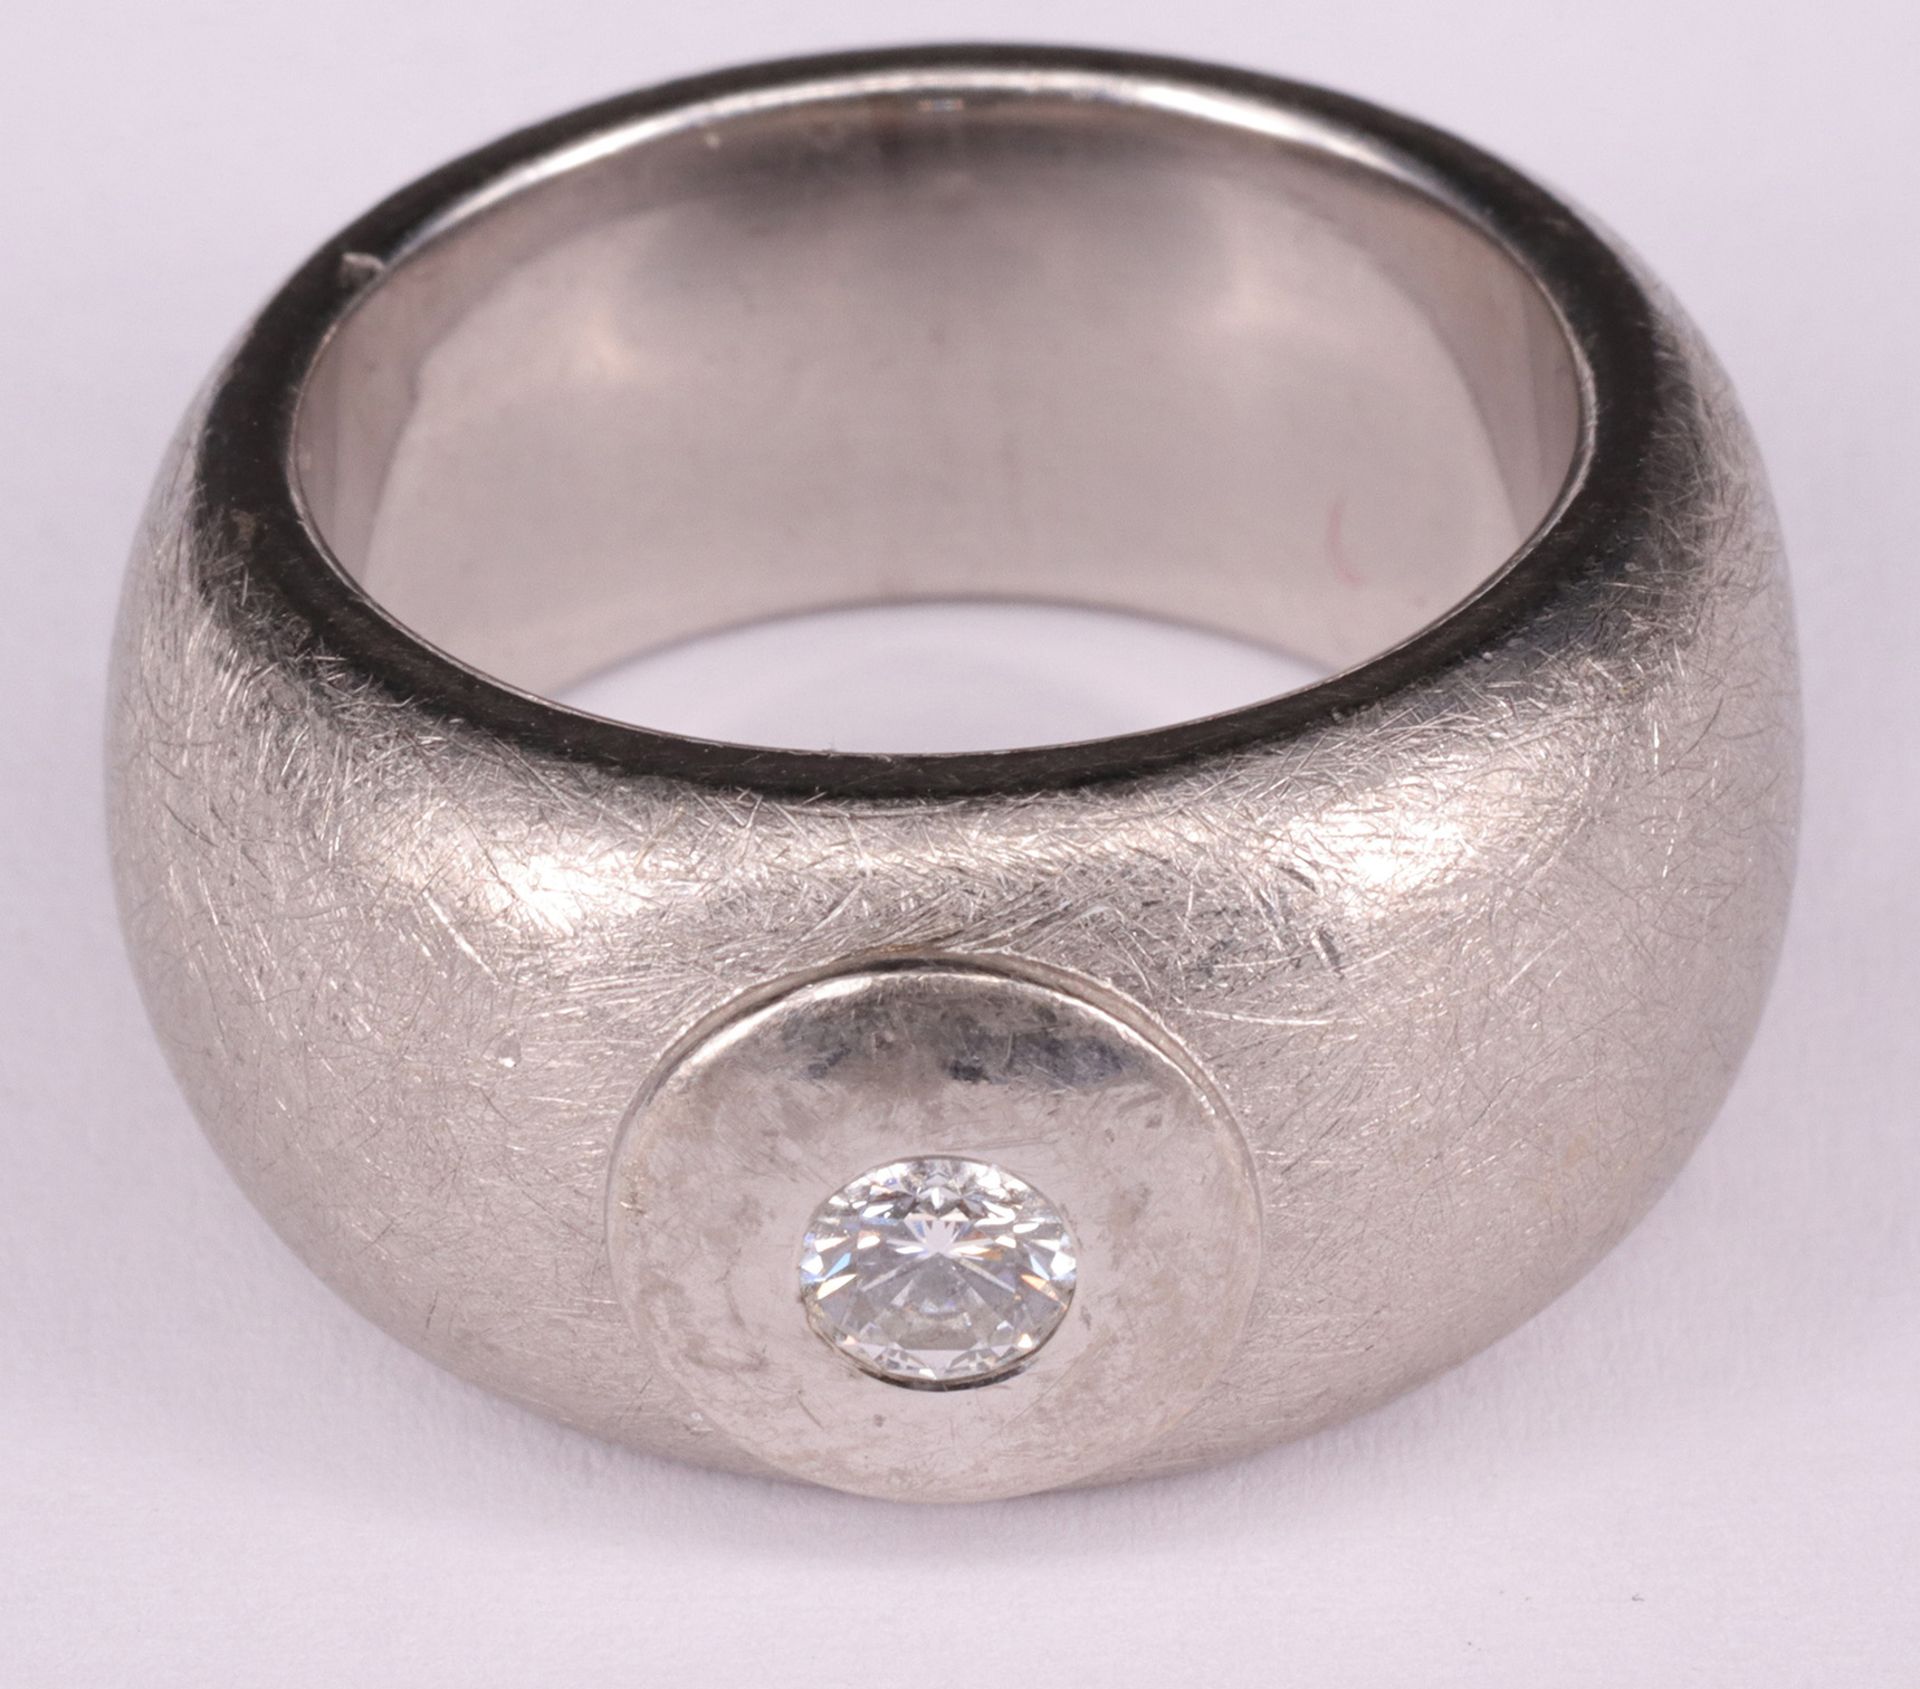 Schwerer Ring, 750er Weißgold, Diamant ca. 0,25 ct, gebürstet, Anfertigung, Gebrachtsspuren, RG62, - Image 3 of 3